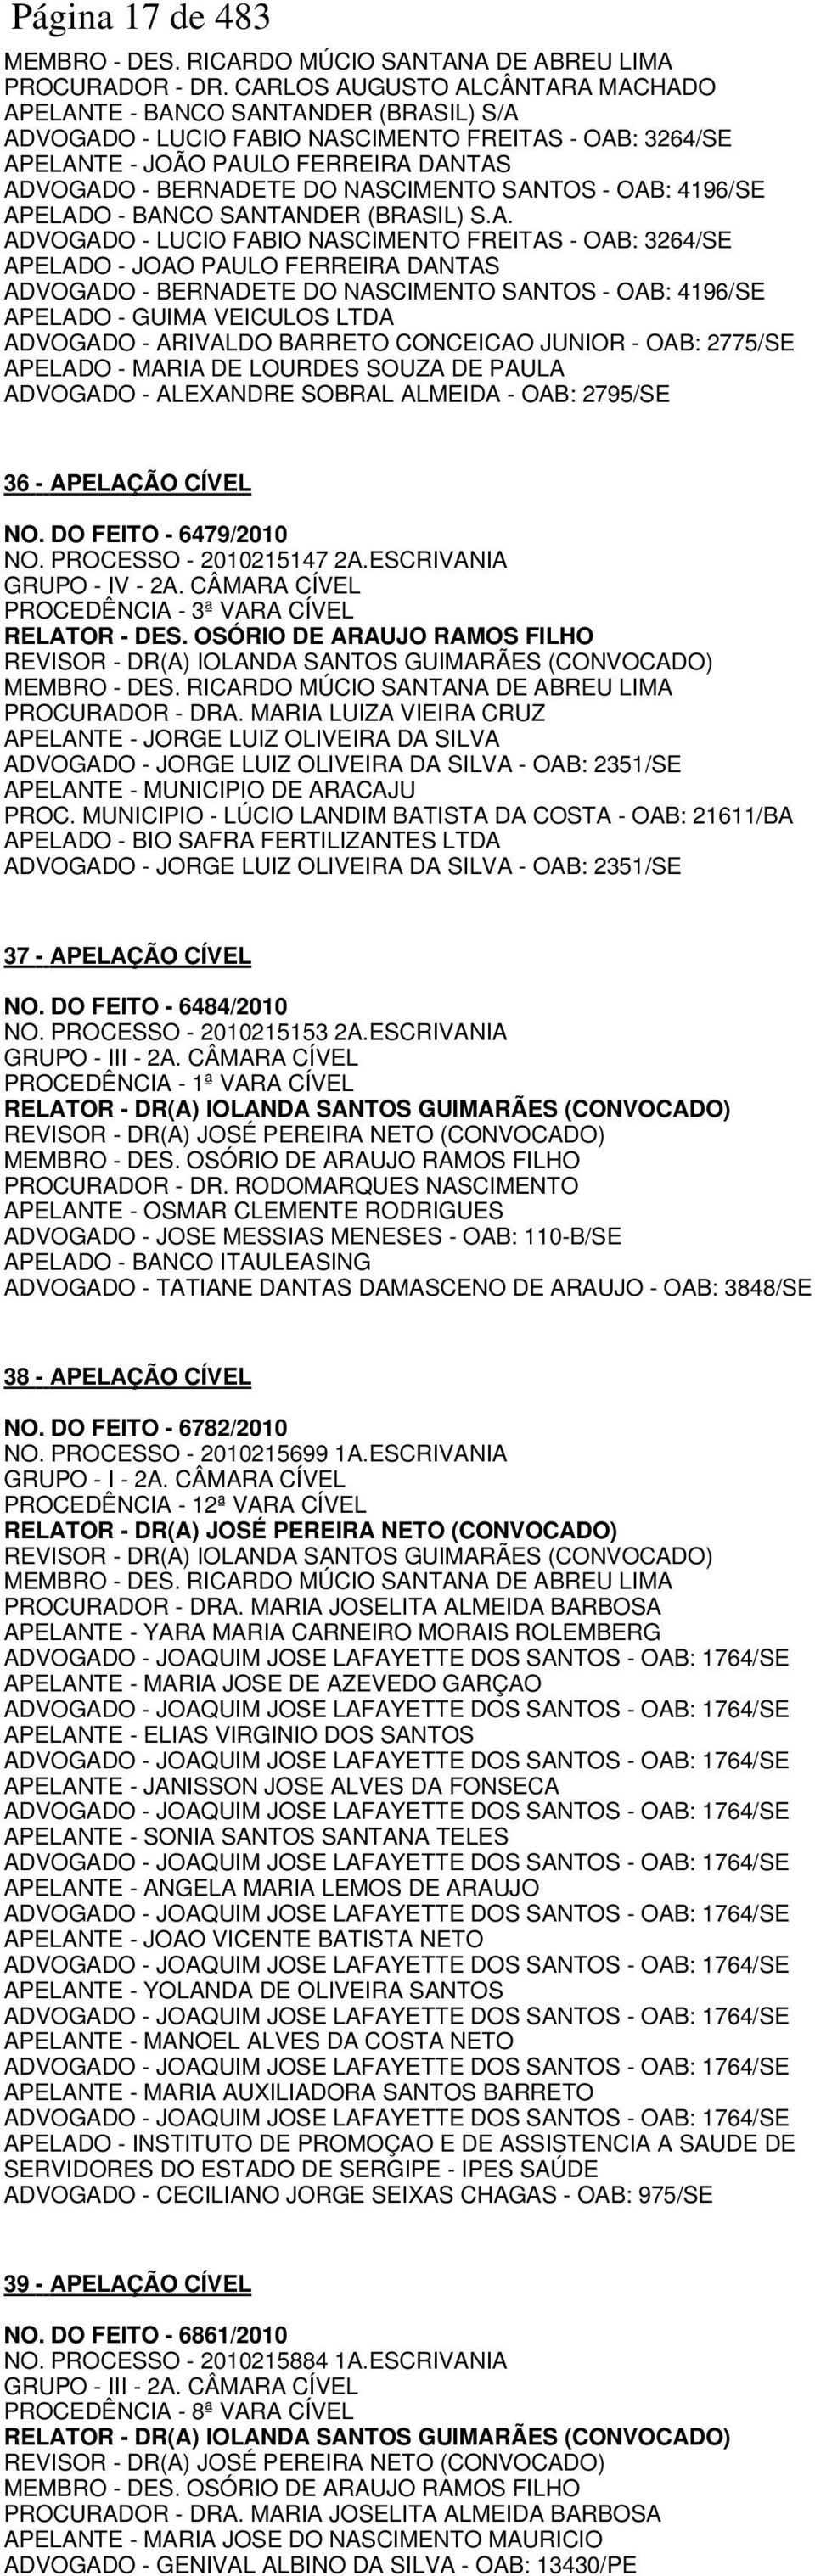 NASCIMENTO SANTOS - OAB: 4196/SE APELADO - BANCO SANTANDER (BRASIL) S.A. ADVOGADO - LUCIO FABIO NASCIMENTO FREITAS - OAB: 3264/SE APELADO - JOAO PAULO FERREIRA DANTAS ADVOGADO - BERNADETE DO